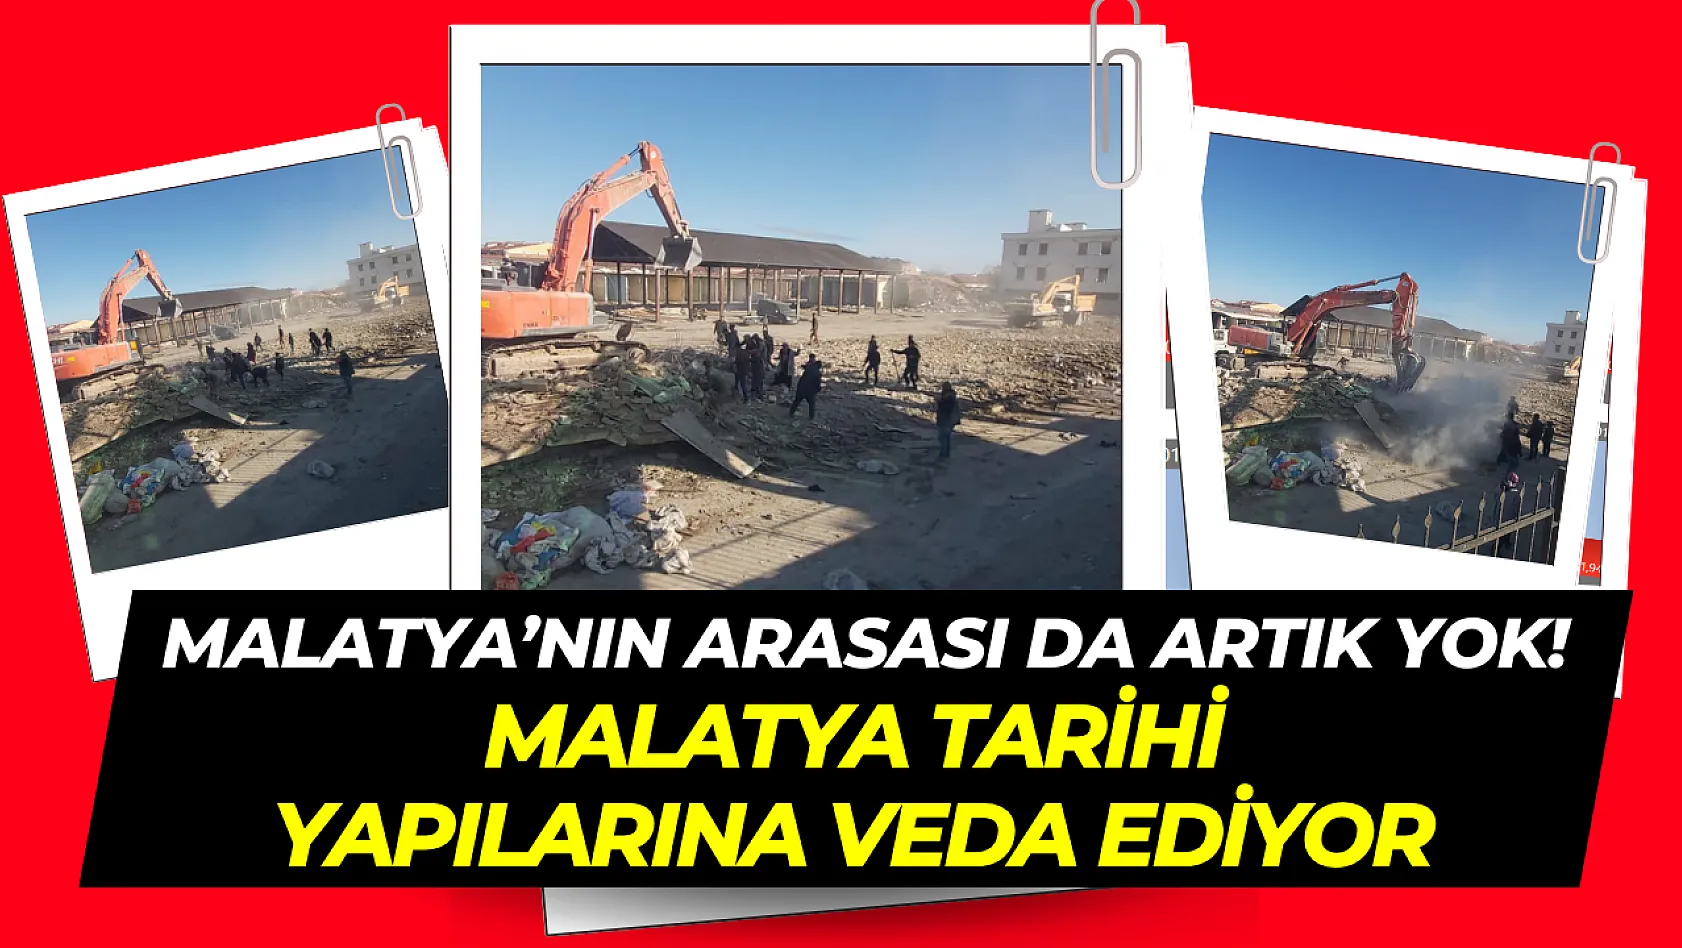 Malatya tarihi yapılarına veda ediyor! Sembol yapılardan arasa yıkıldı